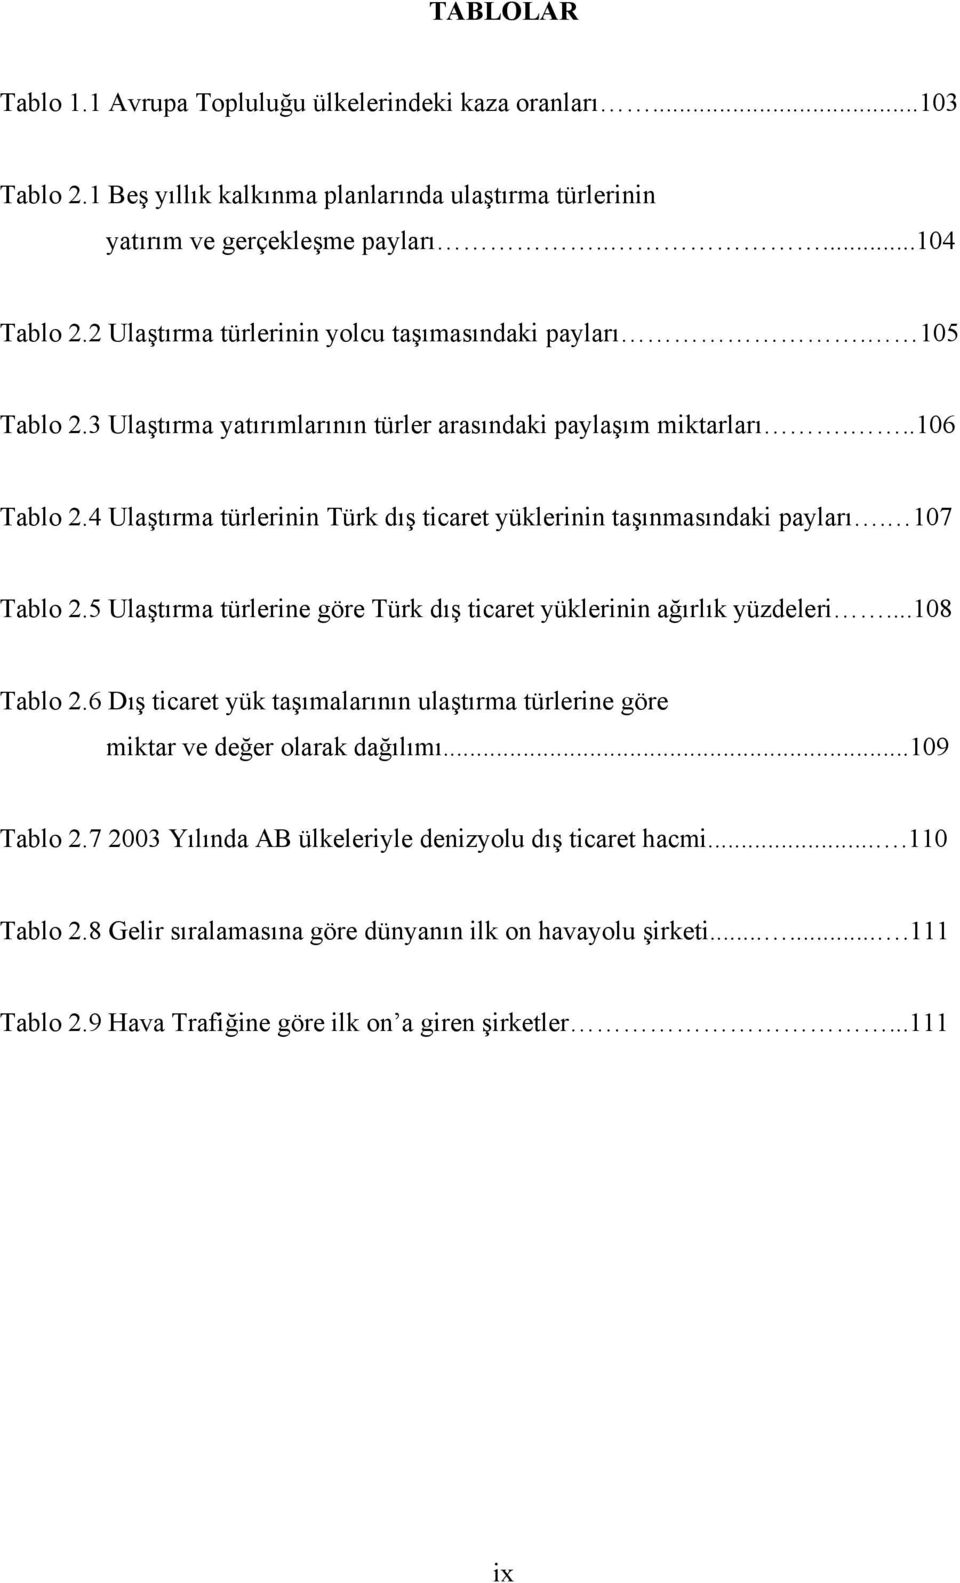 4 Ulaştırma türlerinin Türk dış ticaret yüklerinin taşınmasındaki payları. 107 Tablo 2.5 Ulaştırma türlerine göre Türk dış ticaret yüklerinin ağırlık yüzdeleri...108 Tablo 2.